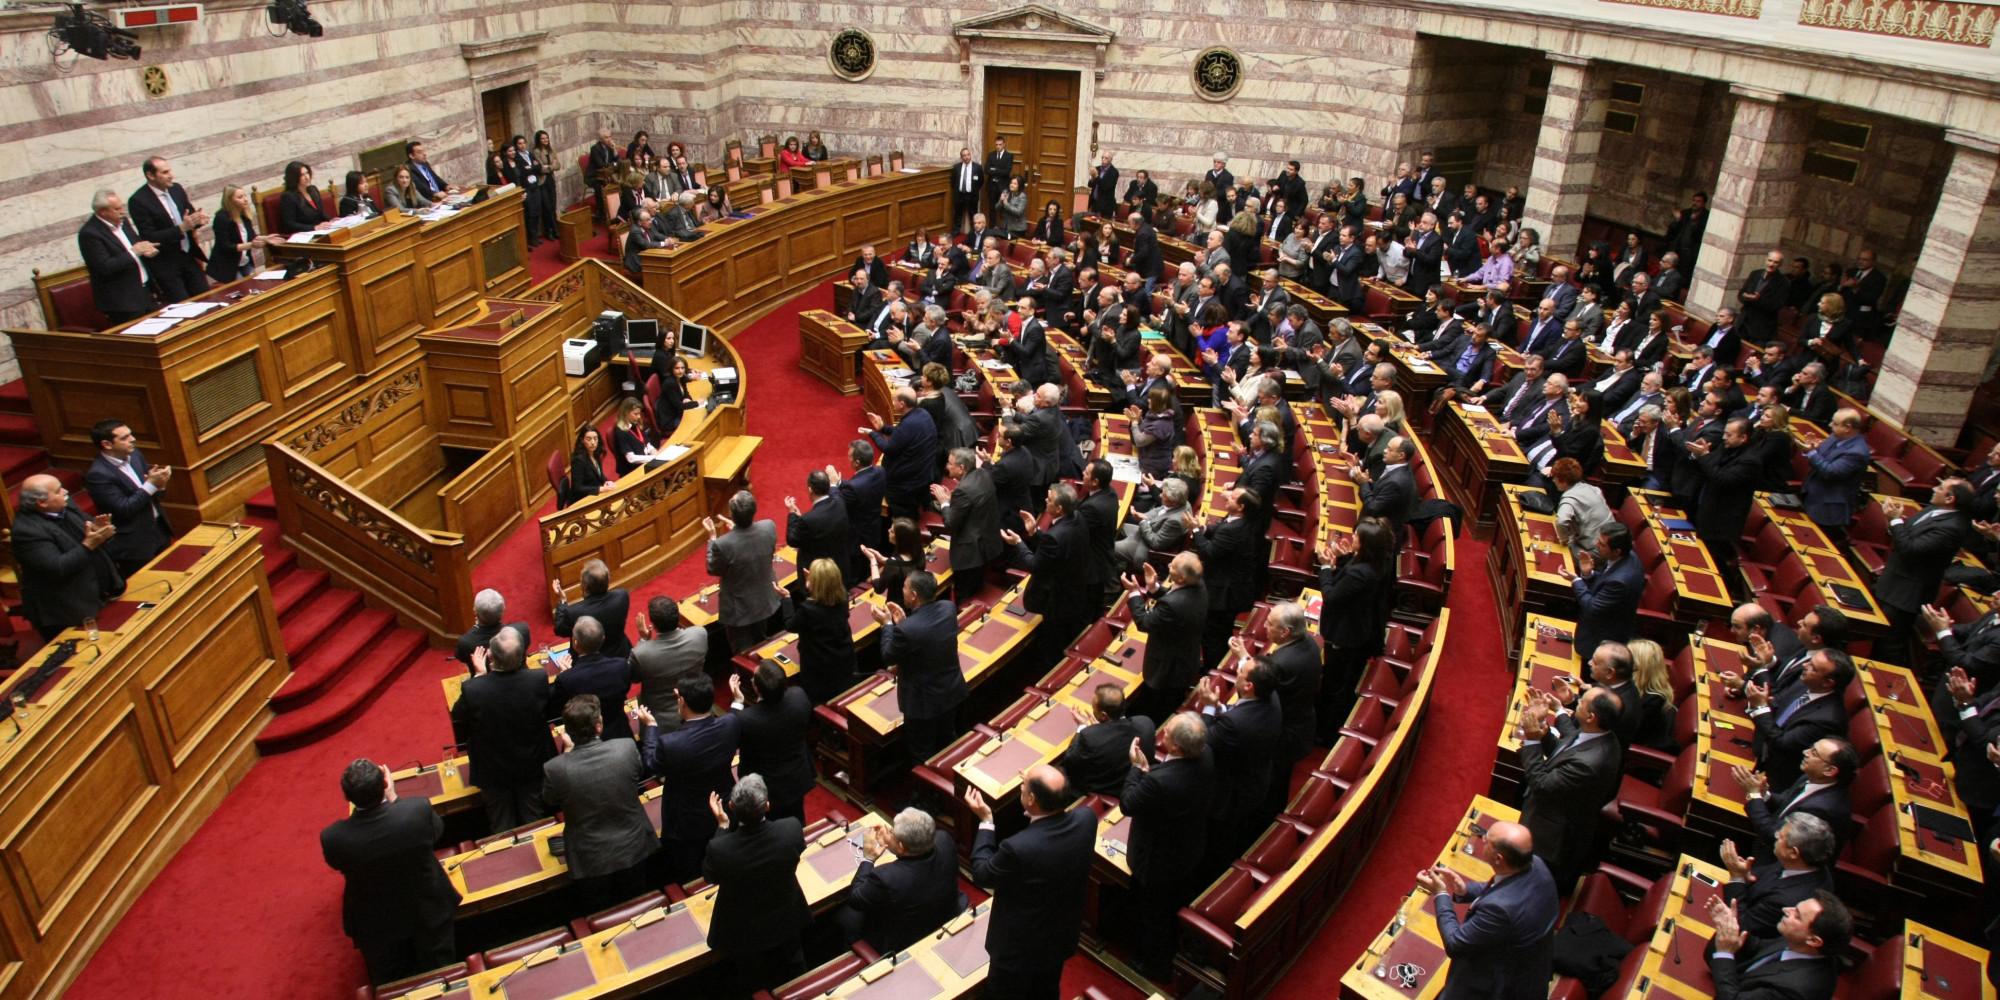 Έτοιμη για πρόταση μομφής η ΝΔ αλλά πλέον είναι αργά… – Όλοι φάνηκαν πολύ «μικροί» & εκχωρείται η Μακεδονία